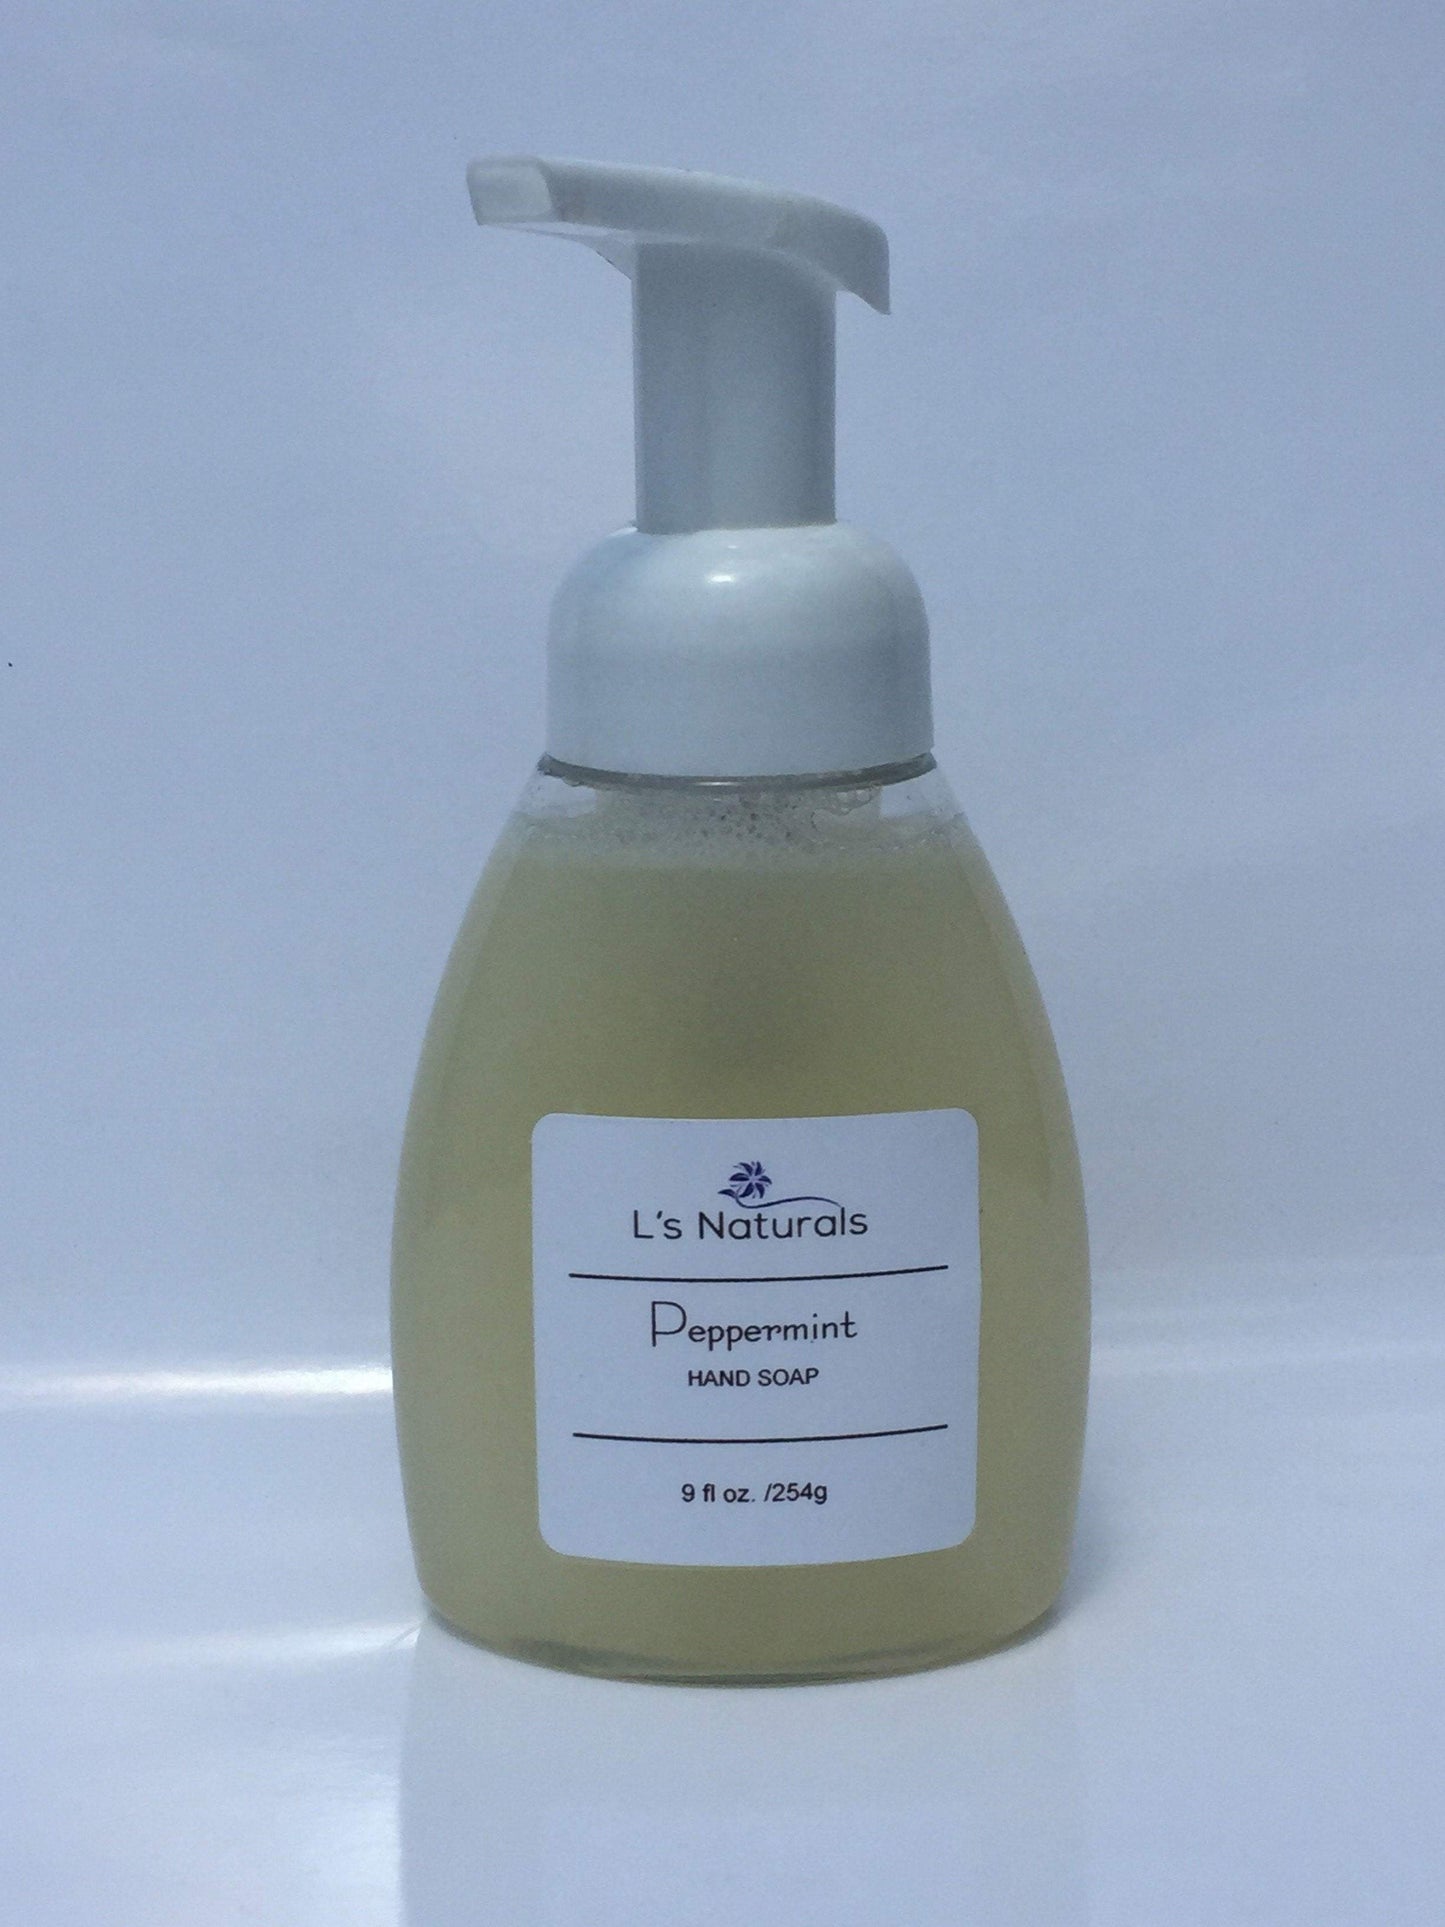 Peppermint Hand Soap (9 fl oz.) - L's Naturals | Bath & Body Boutique